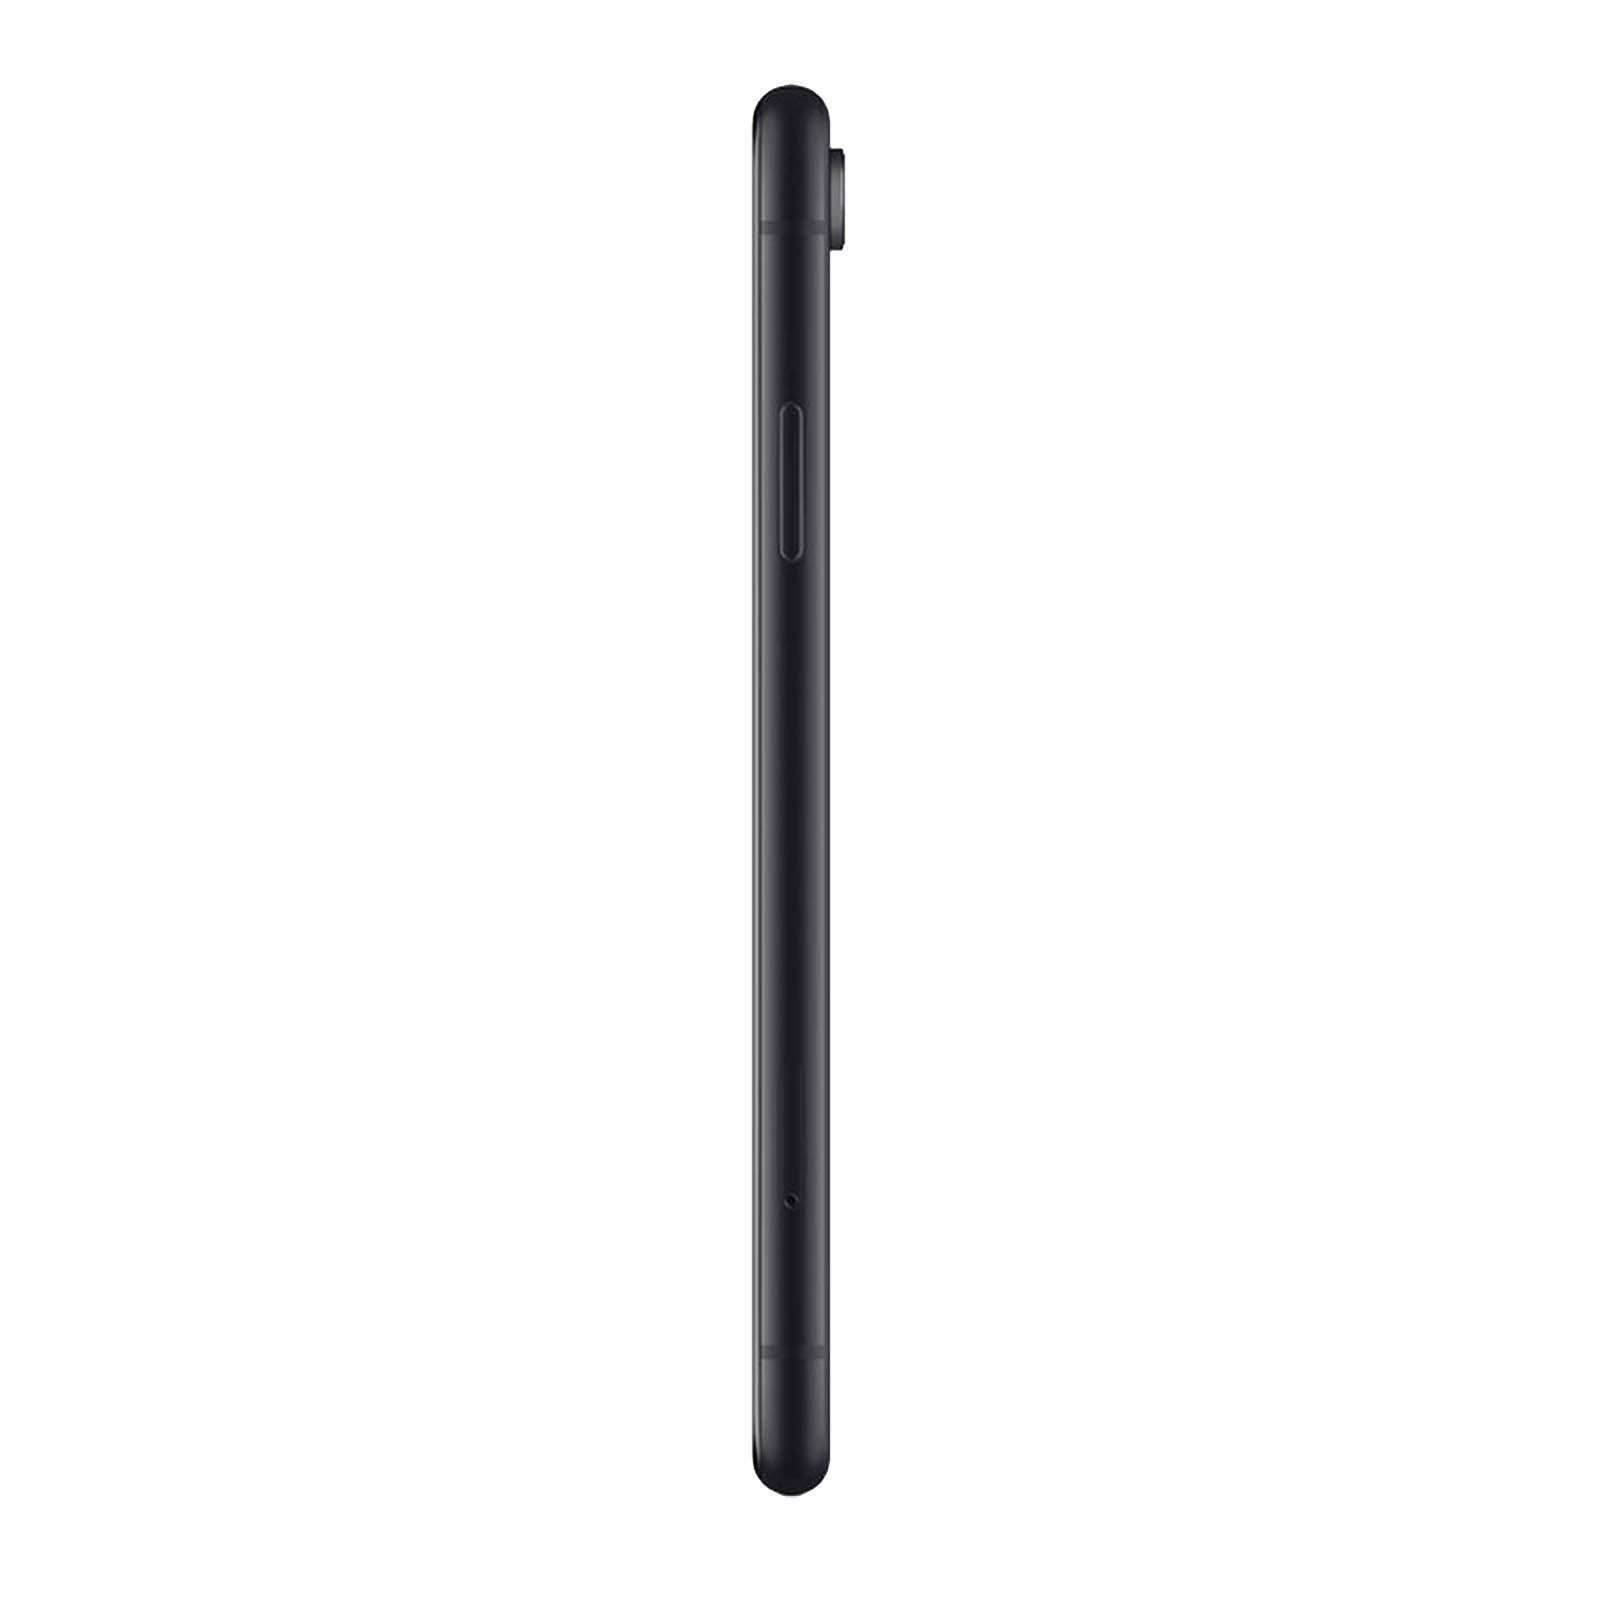 Apple iPhone XR 128 GB - Black - Unlocked - Refurbished – Loop